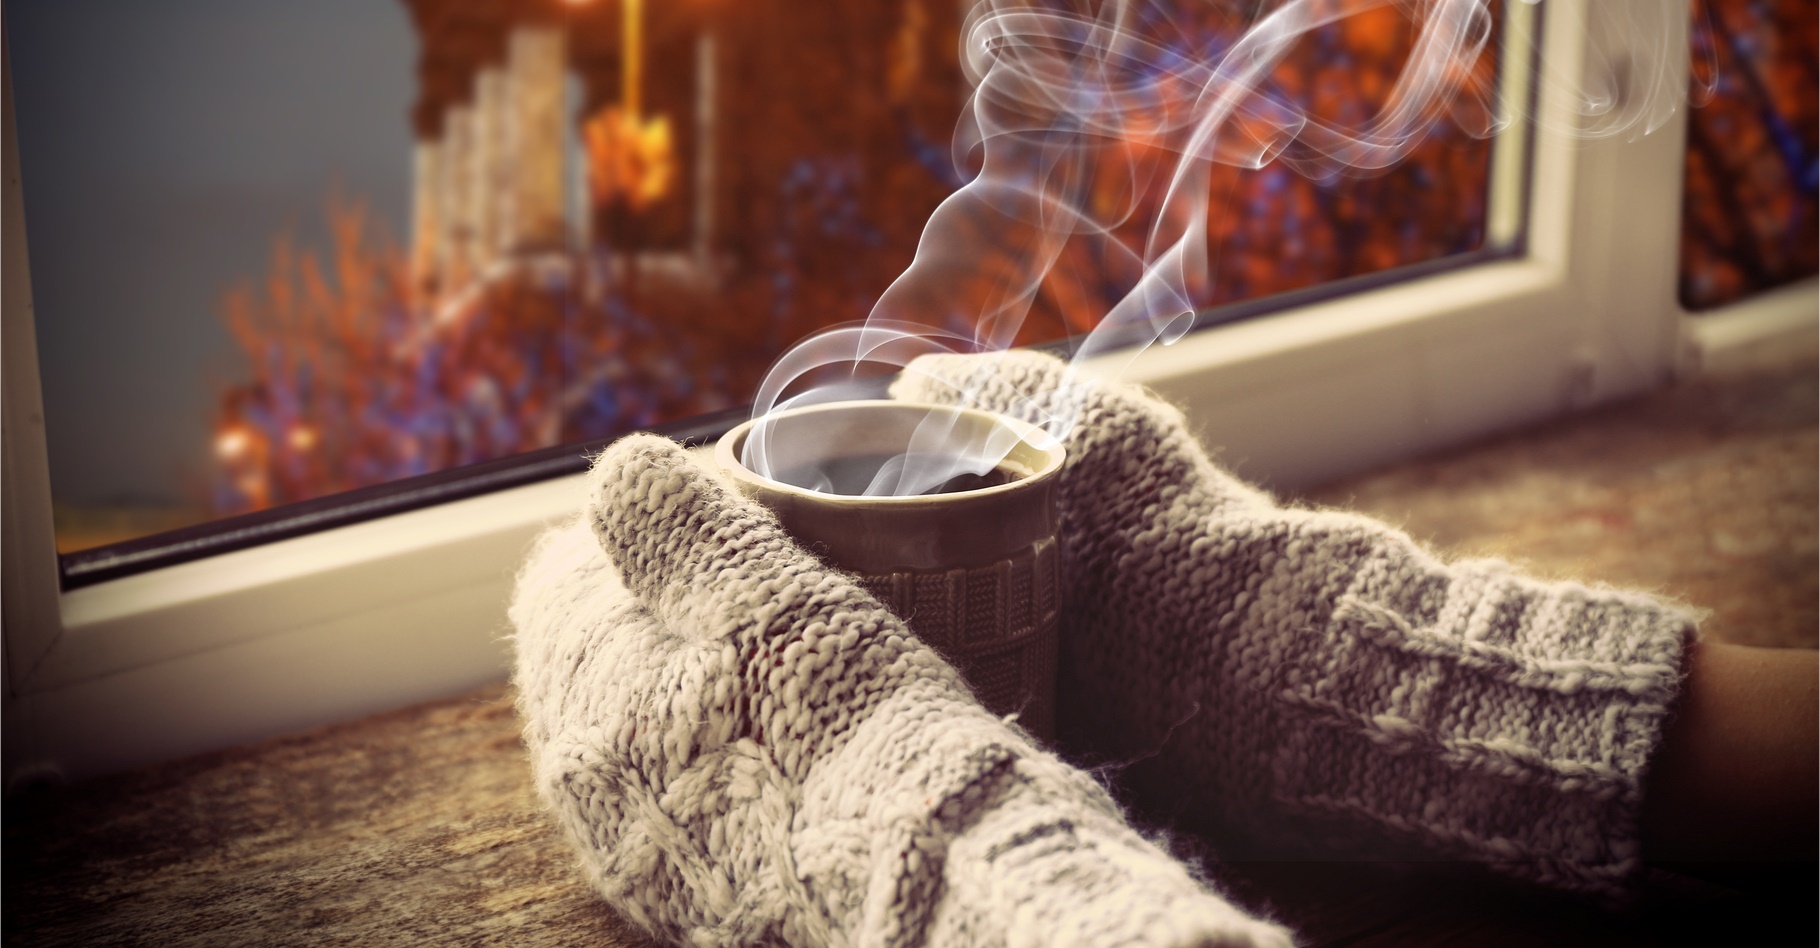 Le froid peut provoquer une crise de la maladie de Raynaud. La solution : se réchauffer et bouger les doigts. © Africa Studio, Shutterstock